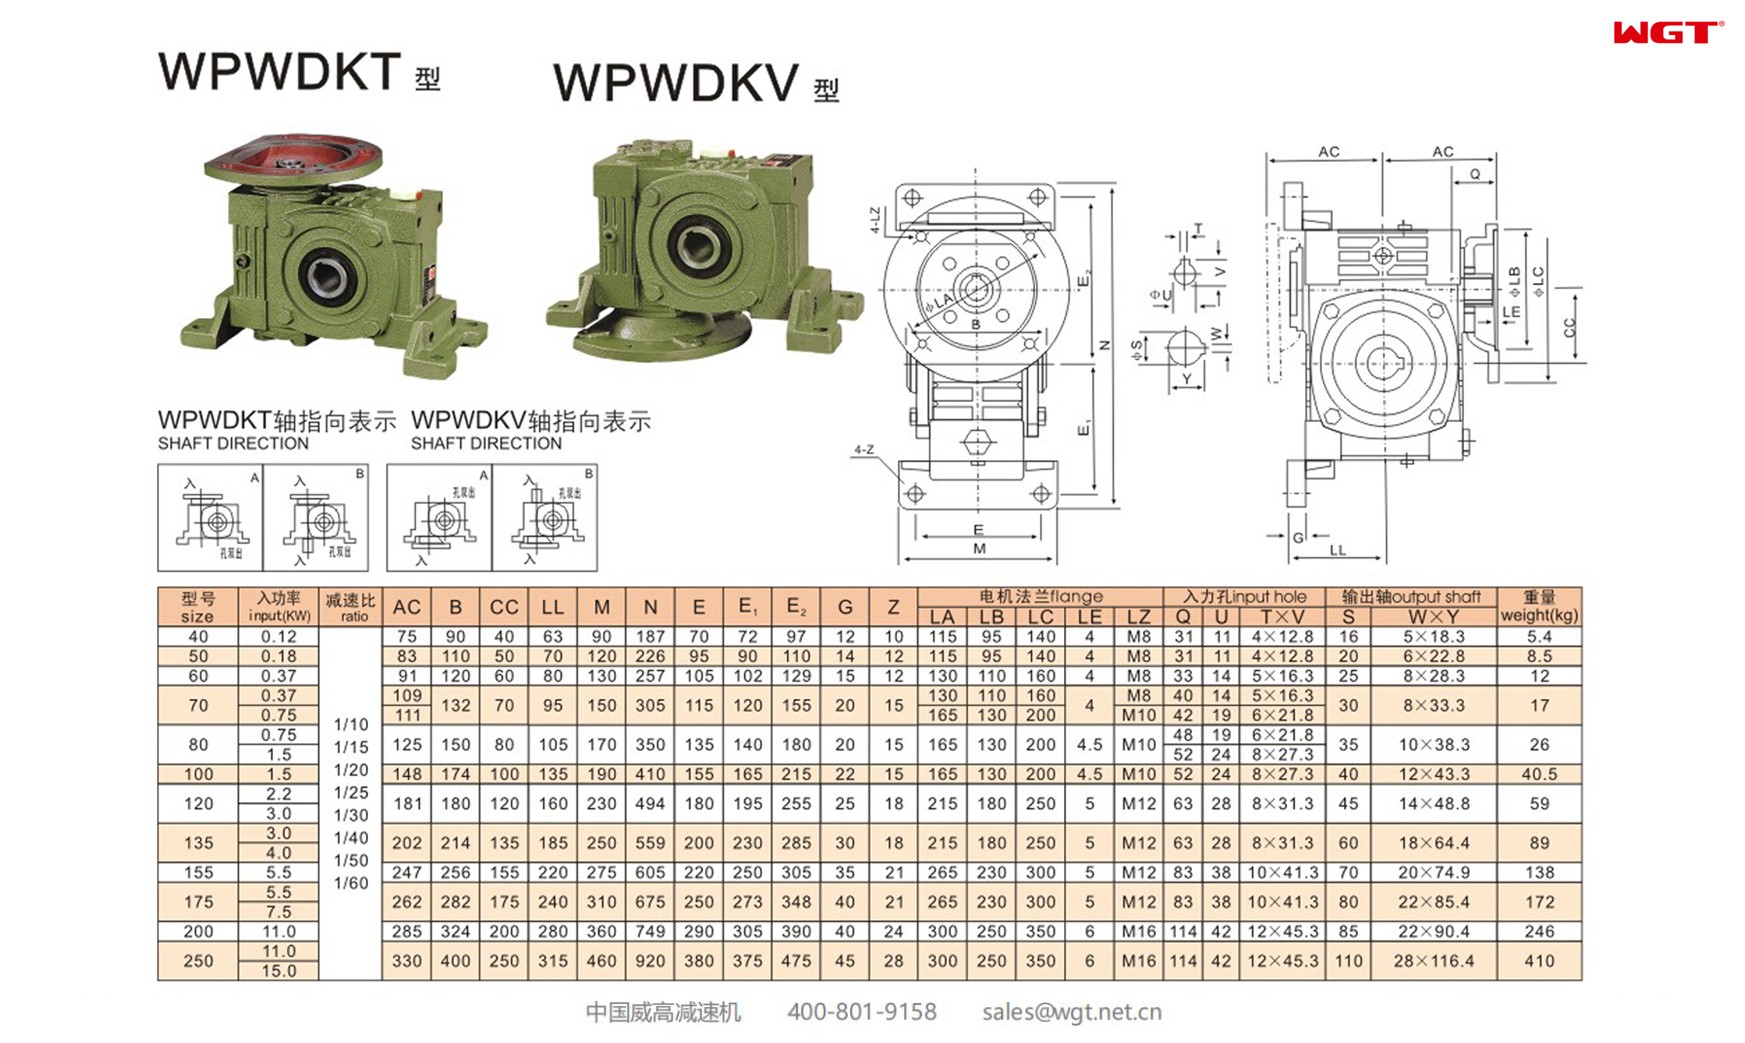 WPWDKV200 worm gear reducer universal speed reducer